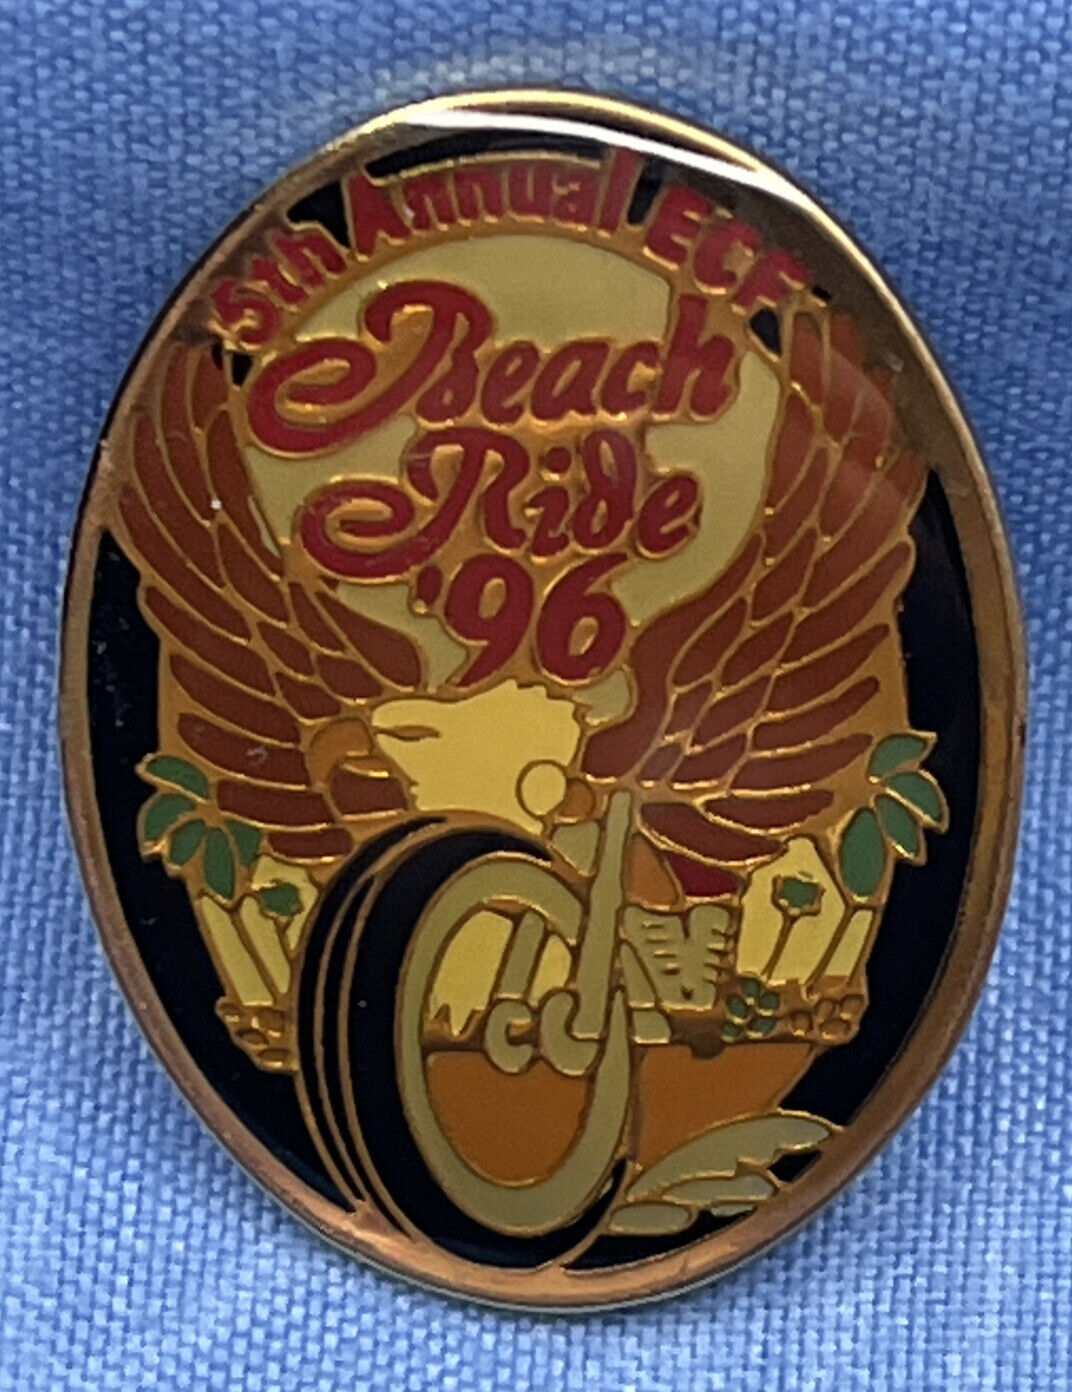 1996 5th ANNUAL ECF BEACH RIDE PIN